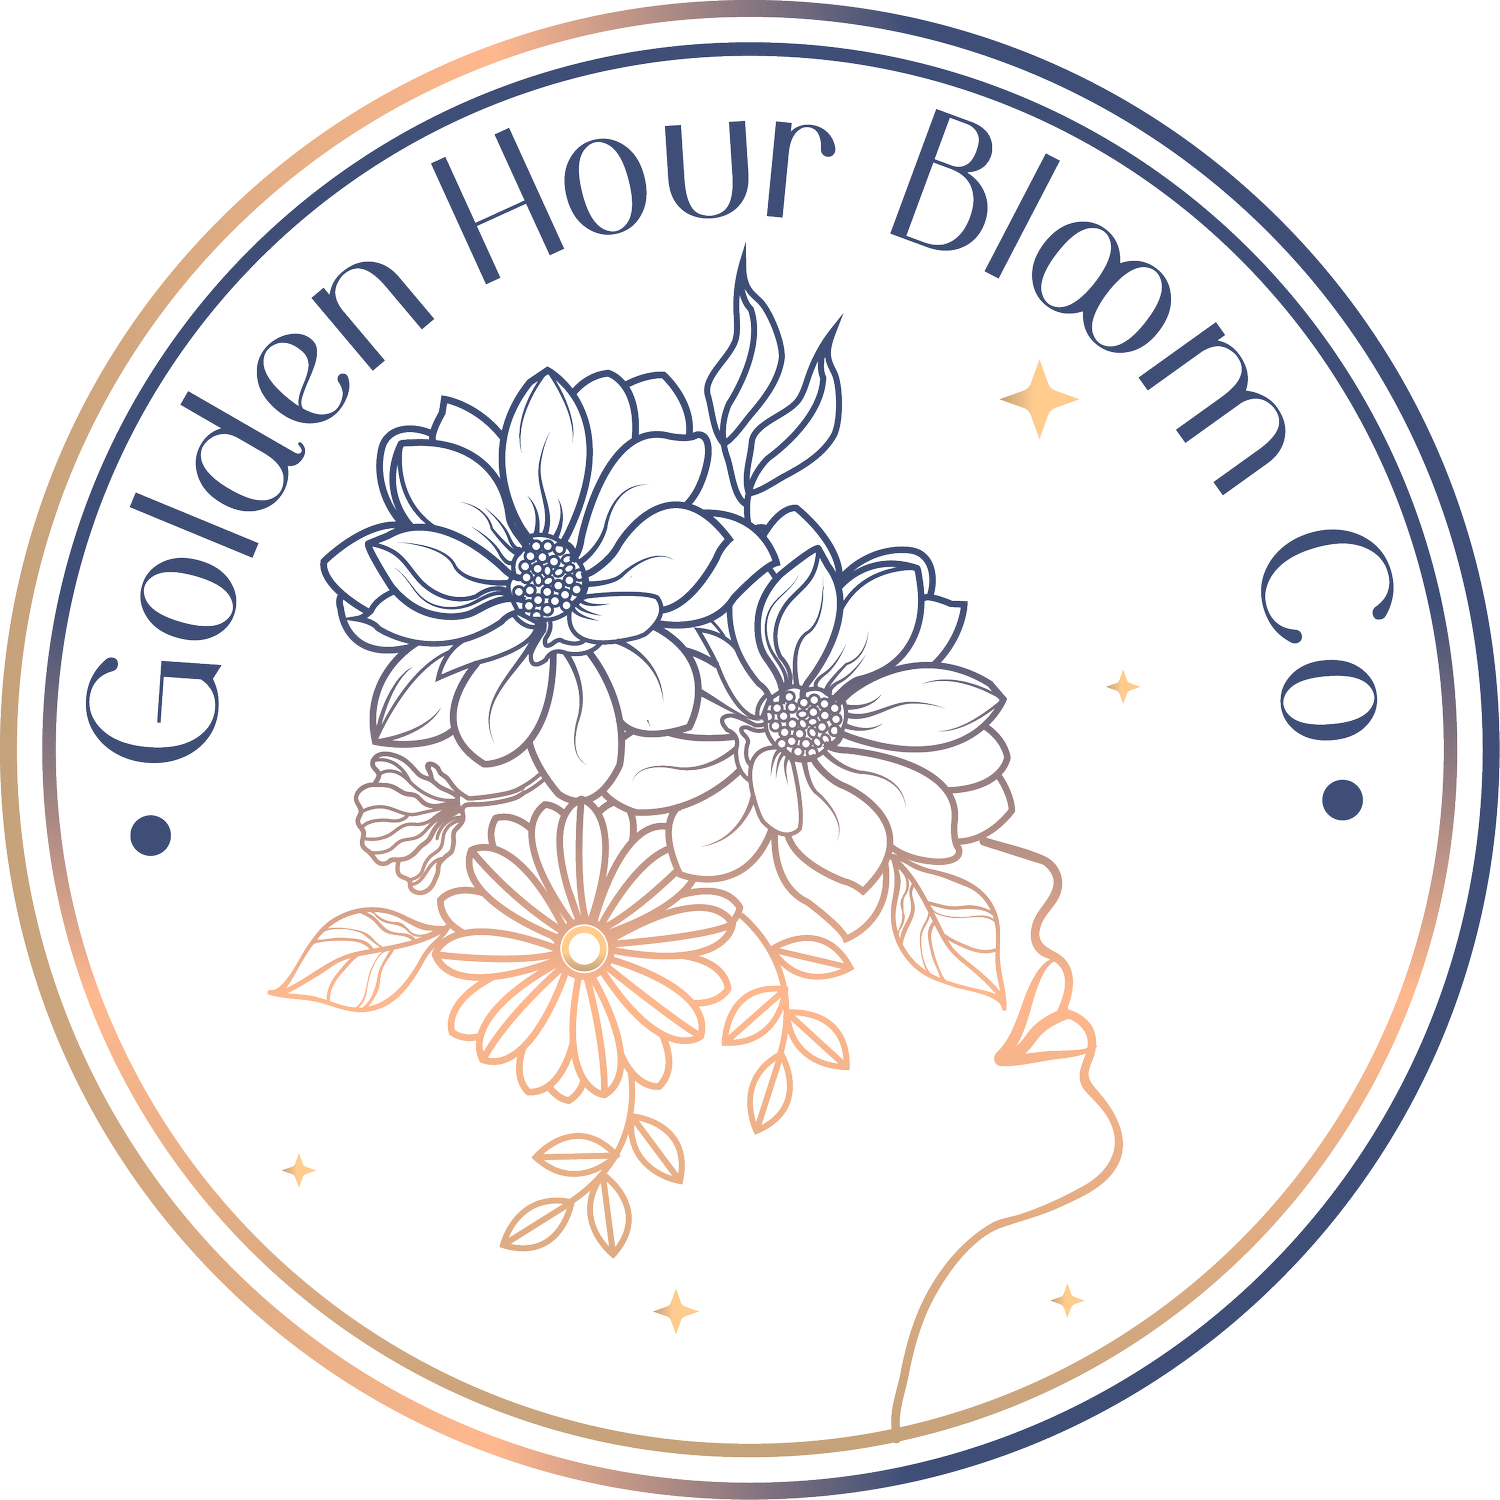 Golden Hour Bloom Co.